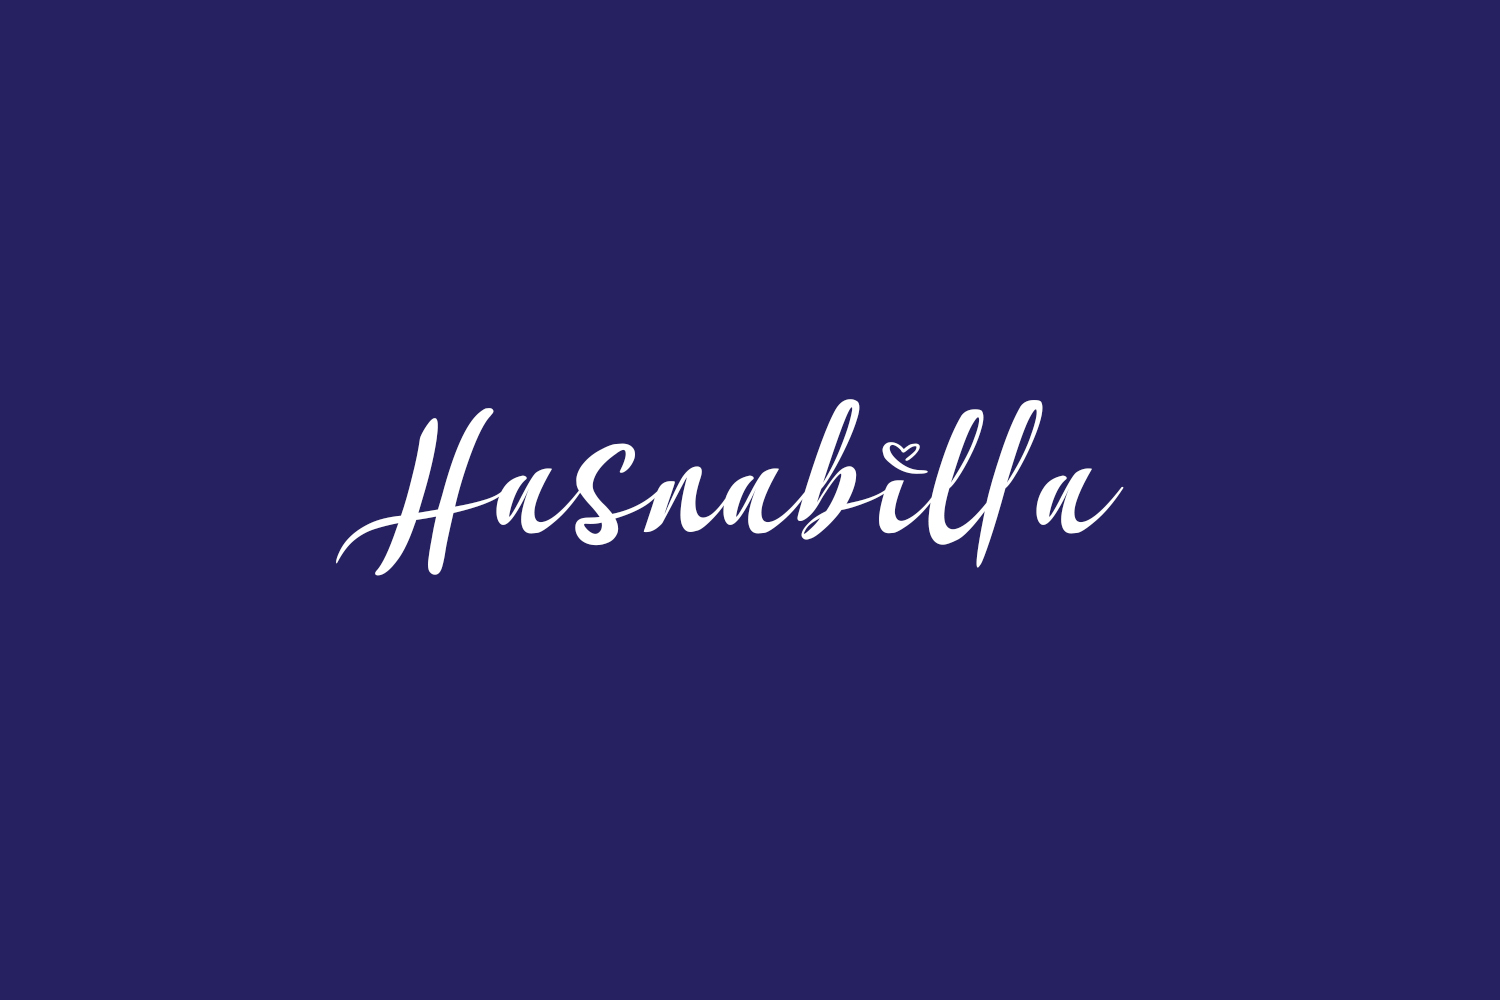 Hasnabilla Free Font